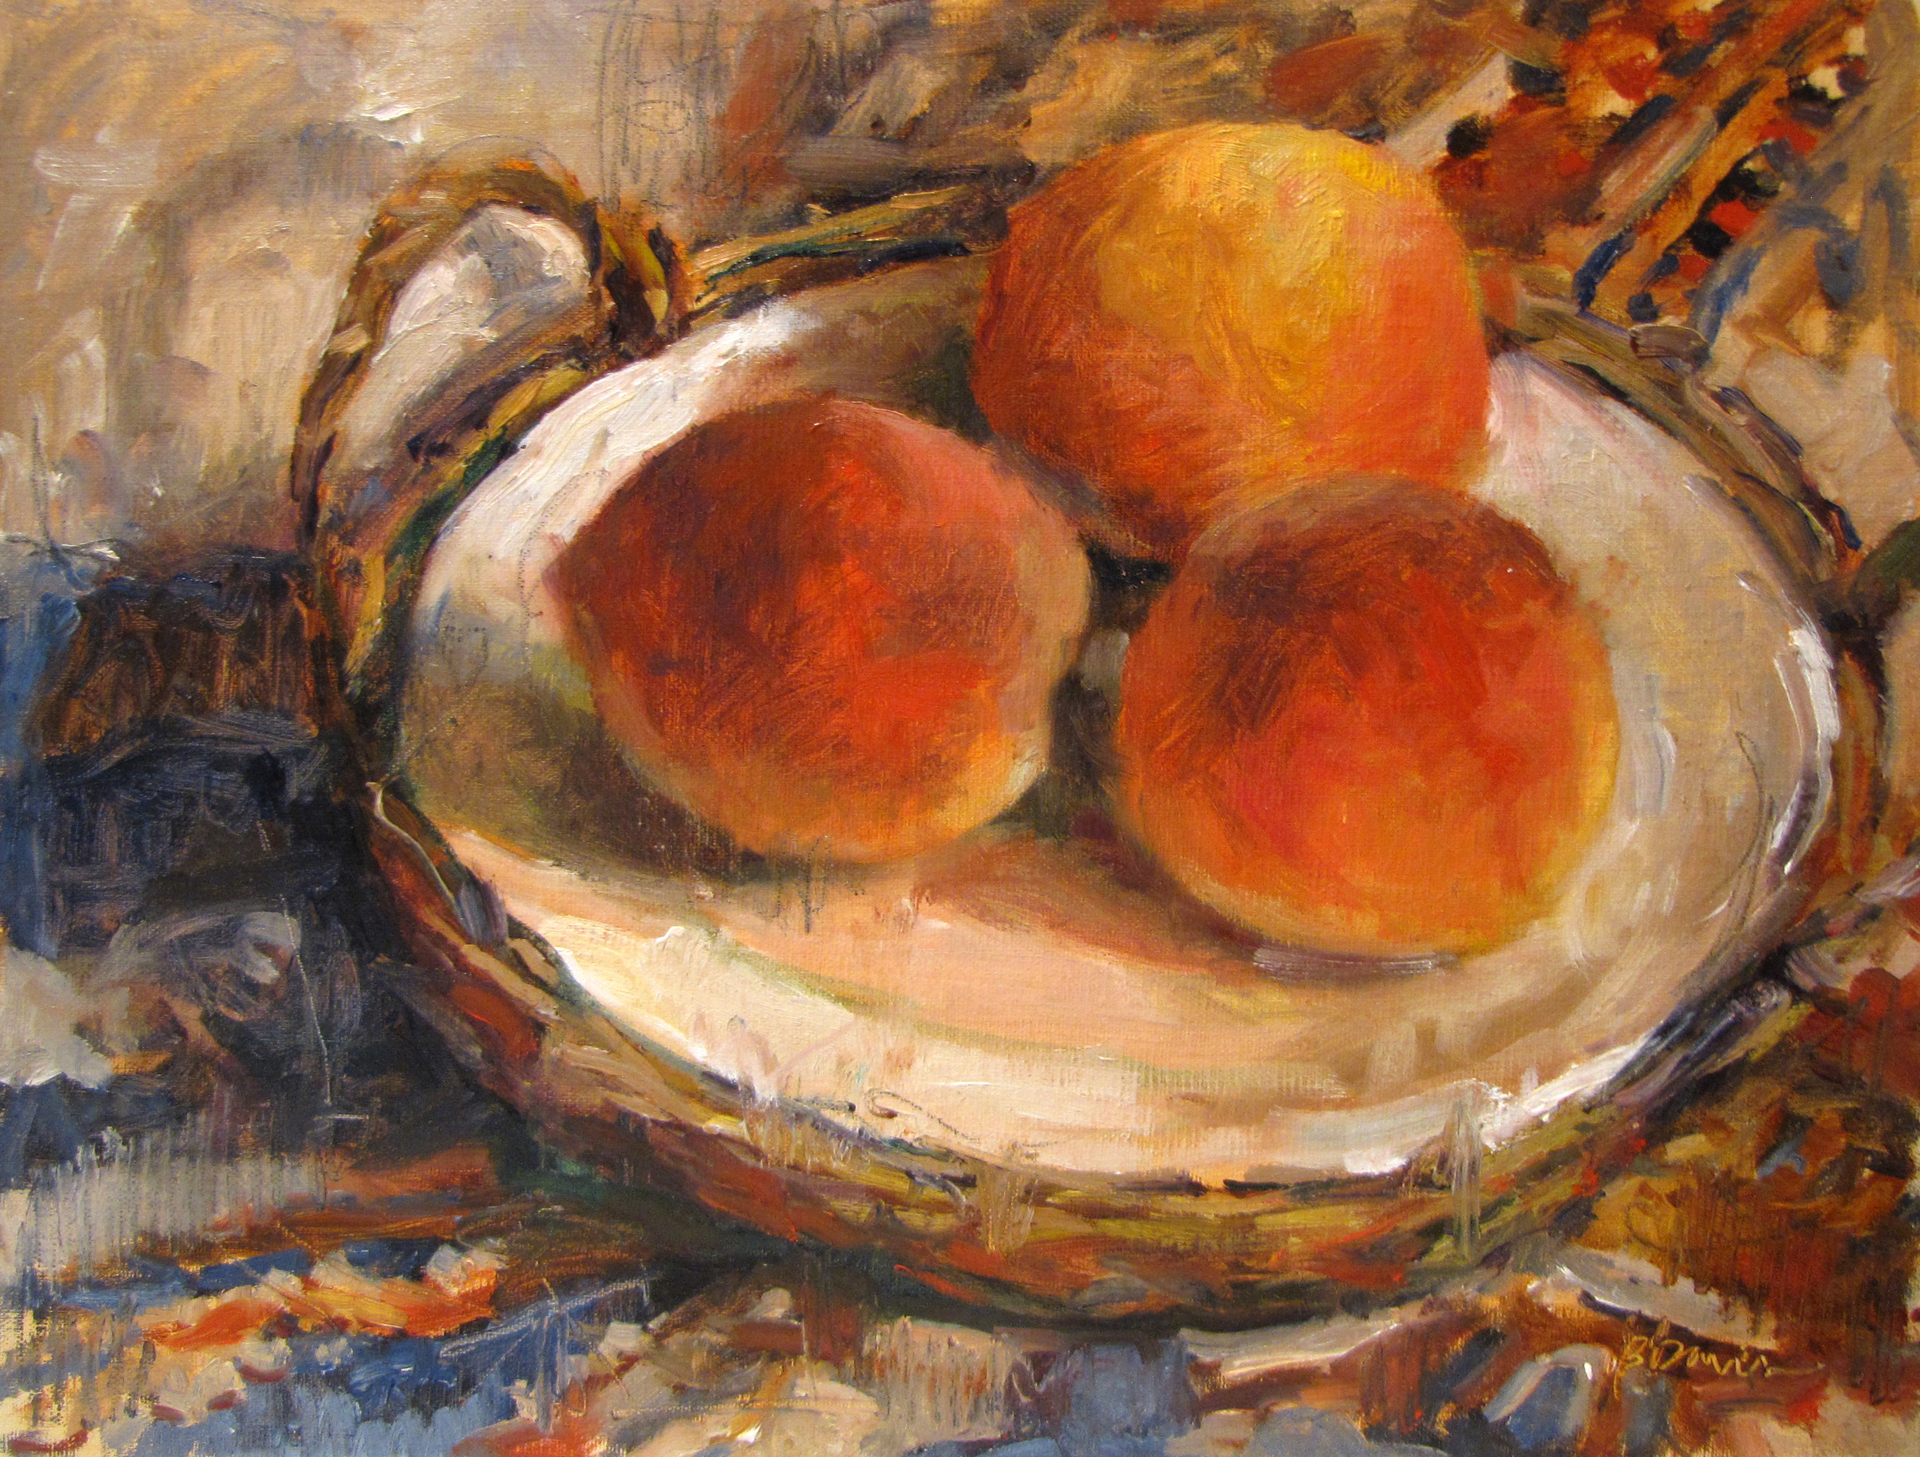 Peaches on a Plate by Barbara Davis